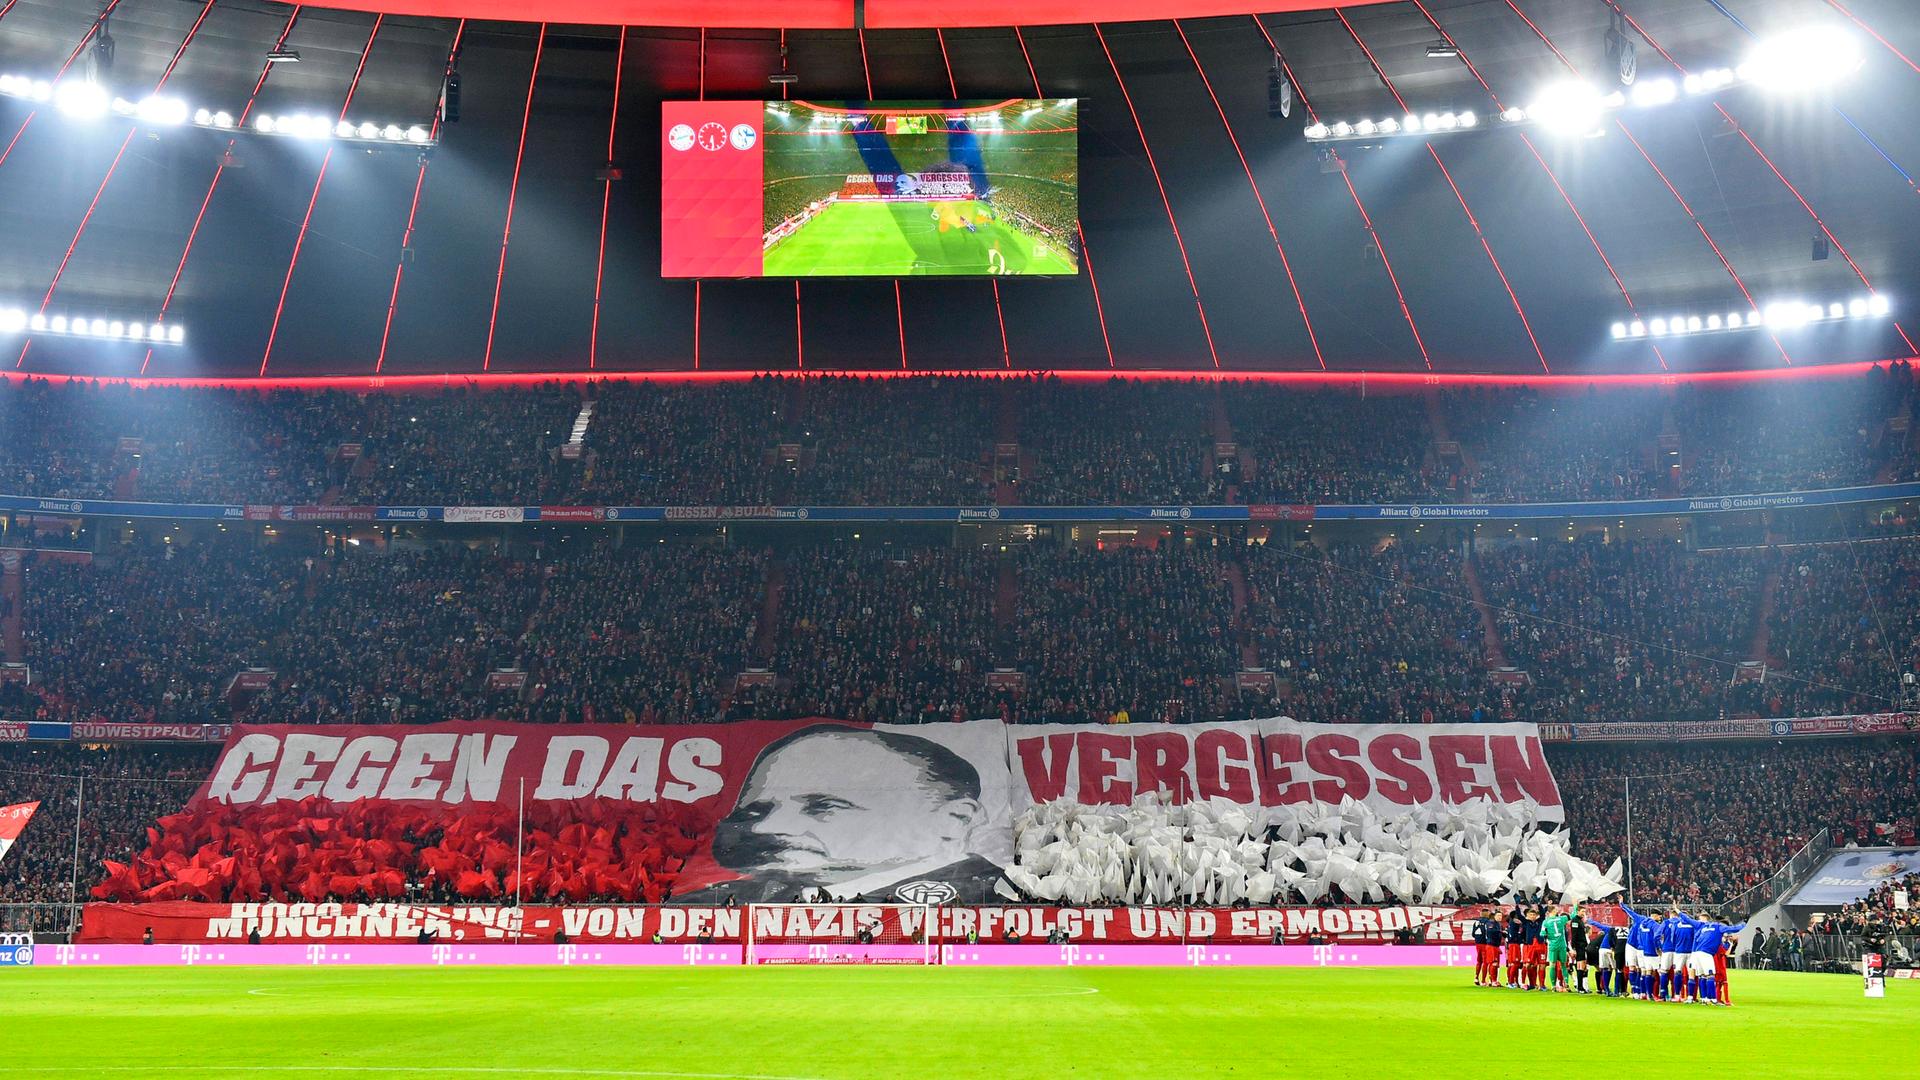 Erinnerungstag im deutschen Fußball - "Der Fußball kann ein großer Verstärker sein"